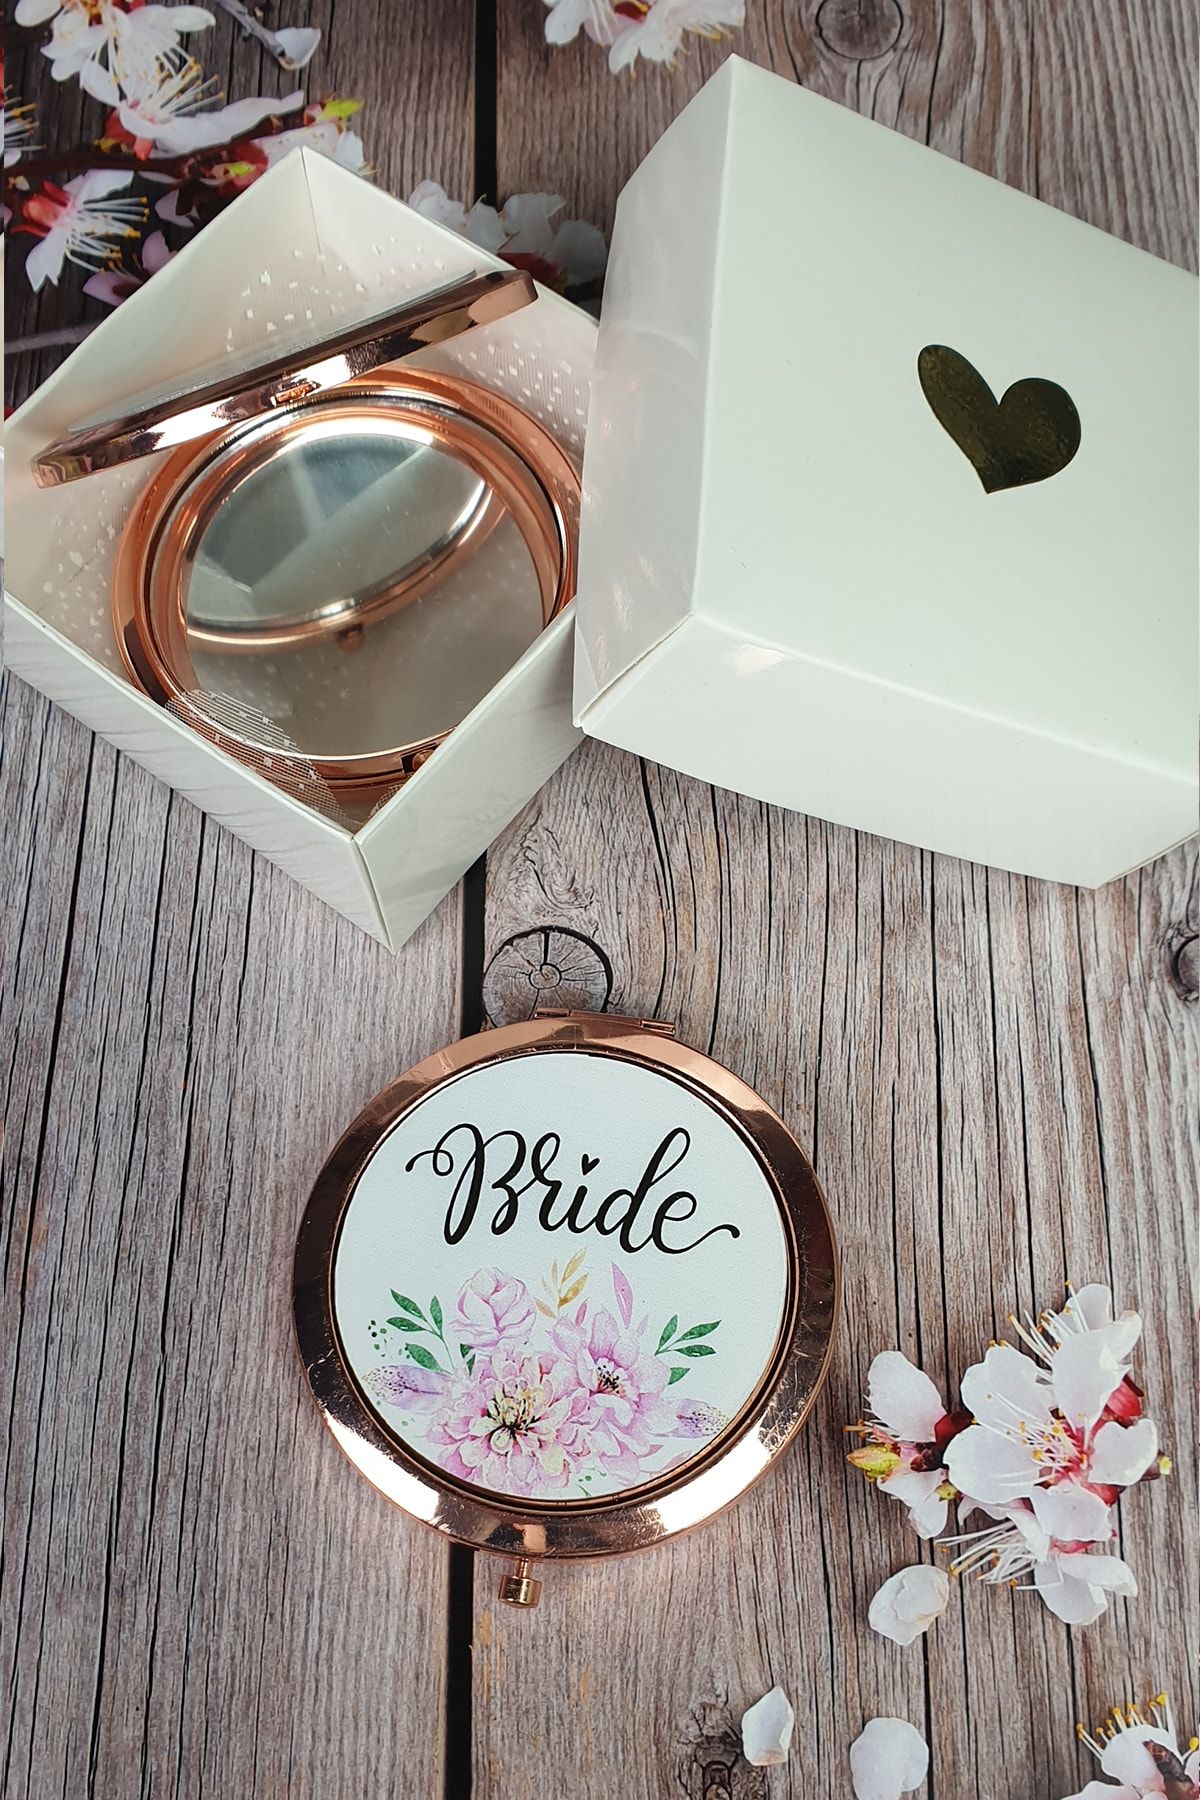 PEKSHOP Hediyelik Kutulu Makyaj Aynası, Rose Gold Renk, Bride Yazılı